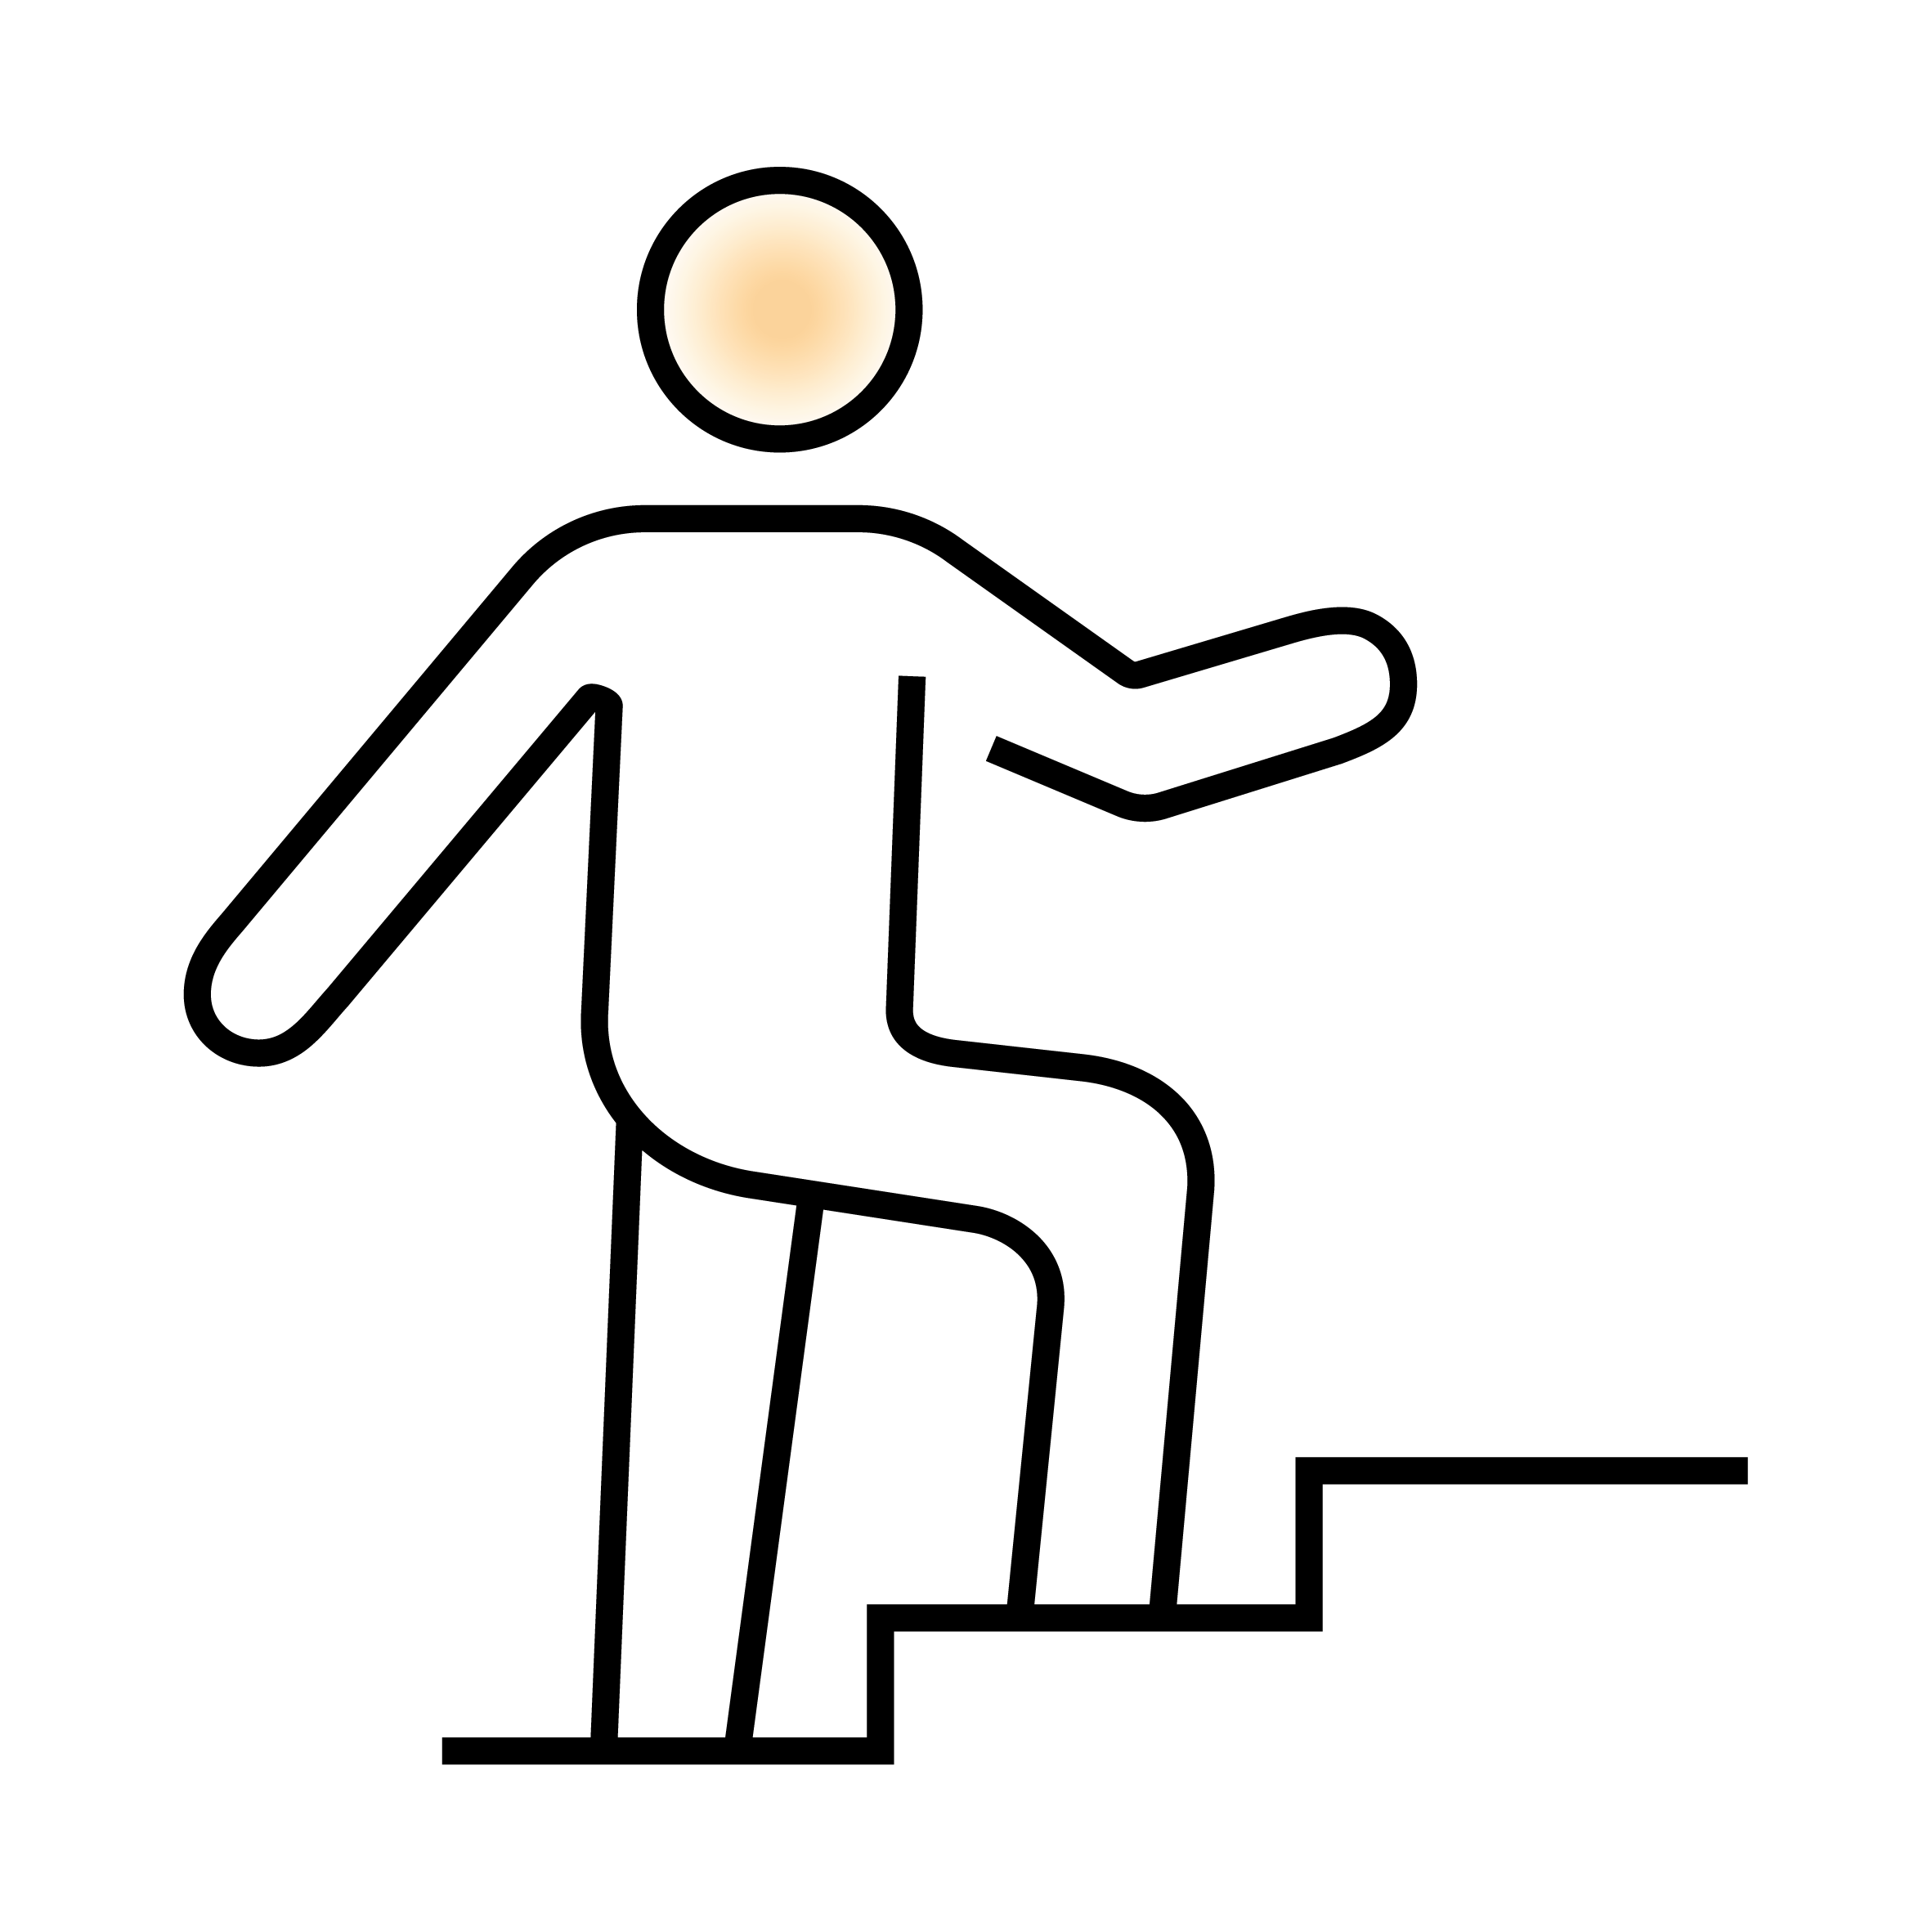 Stilisierte Ikone einer Person, die eine Treppe hinaufsteigt.